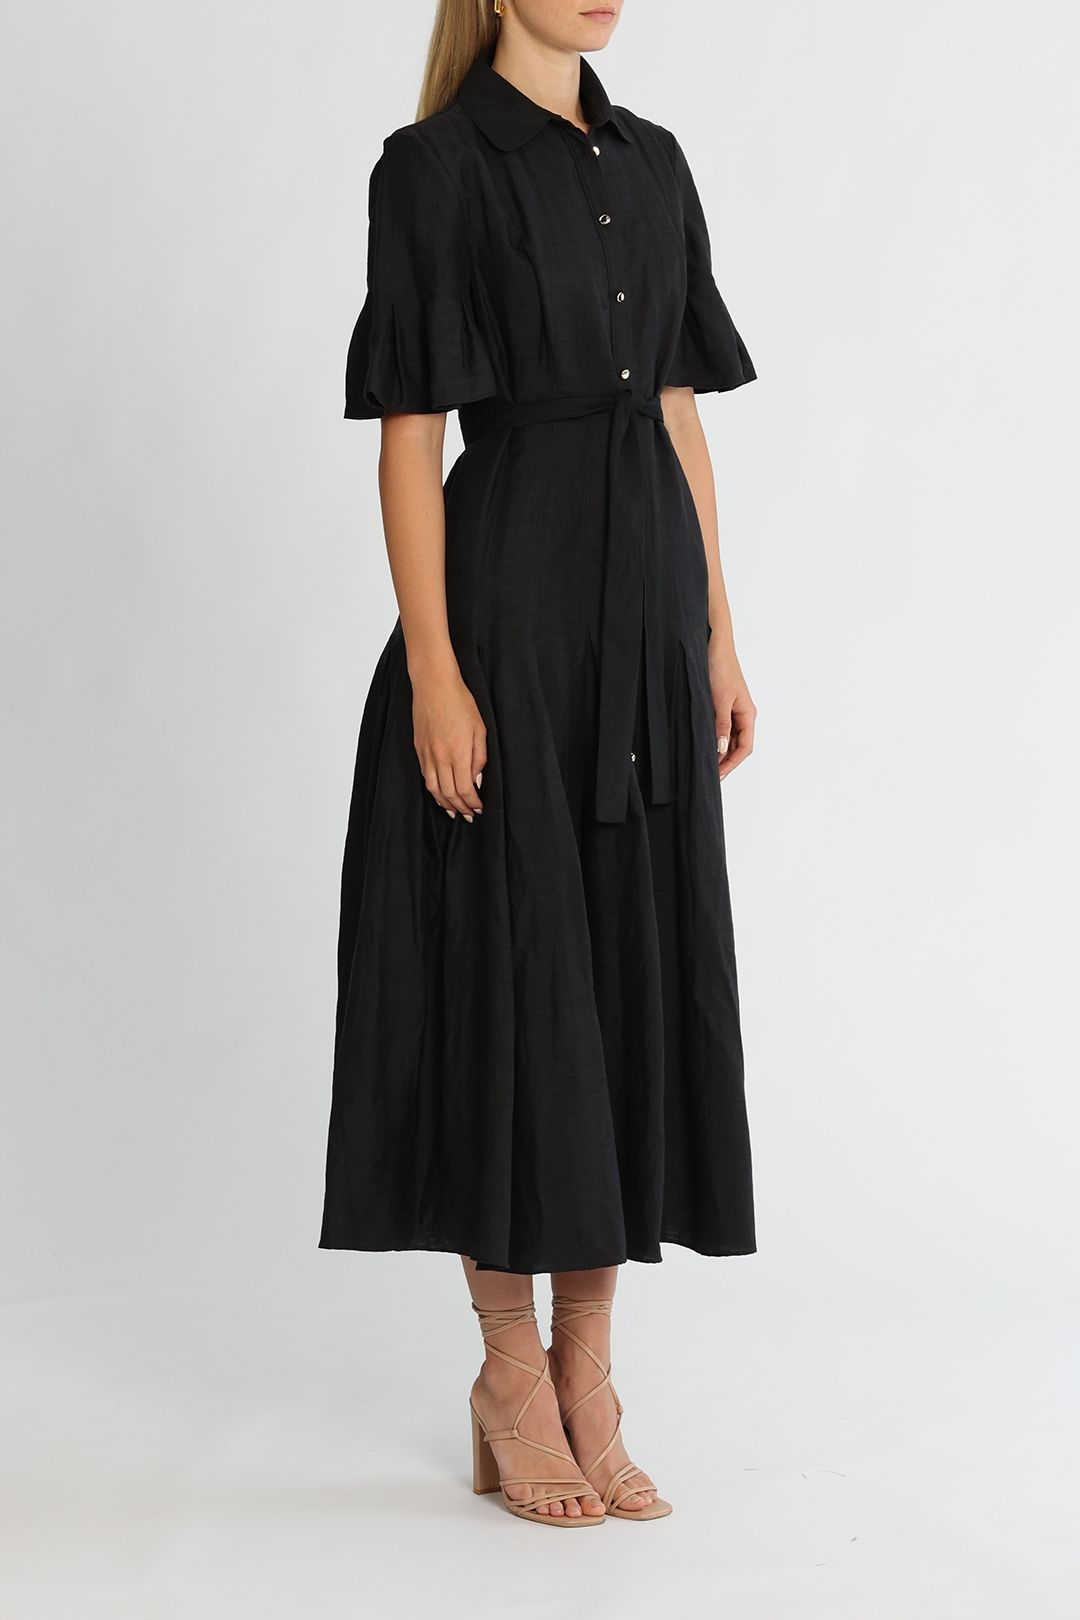 Acler Lockwood Dress Black Flared Skirt